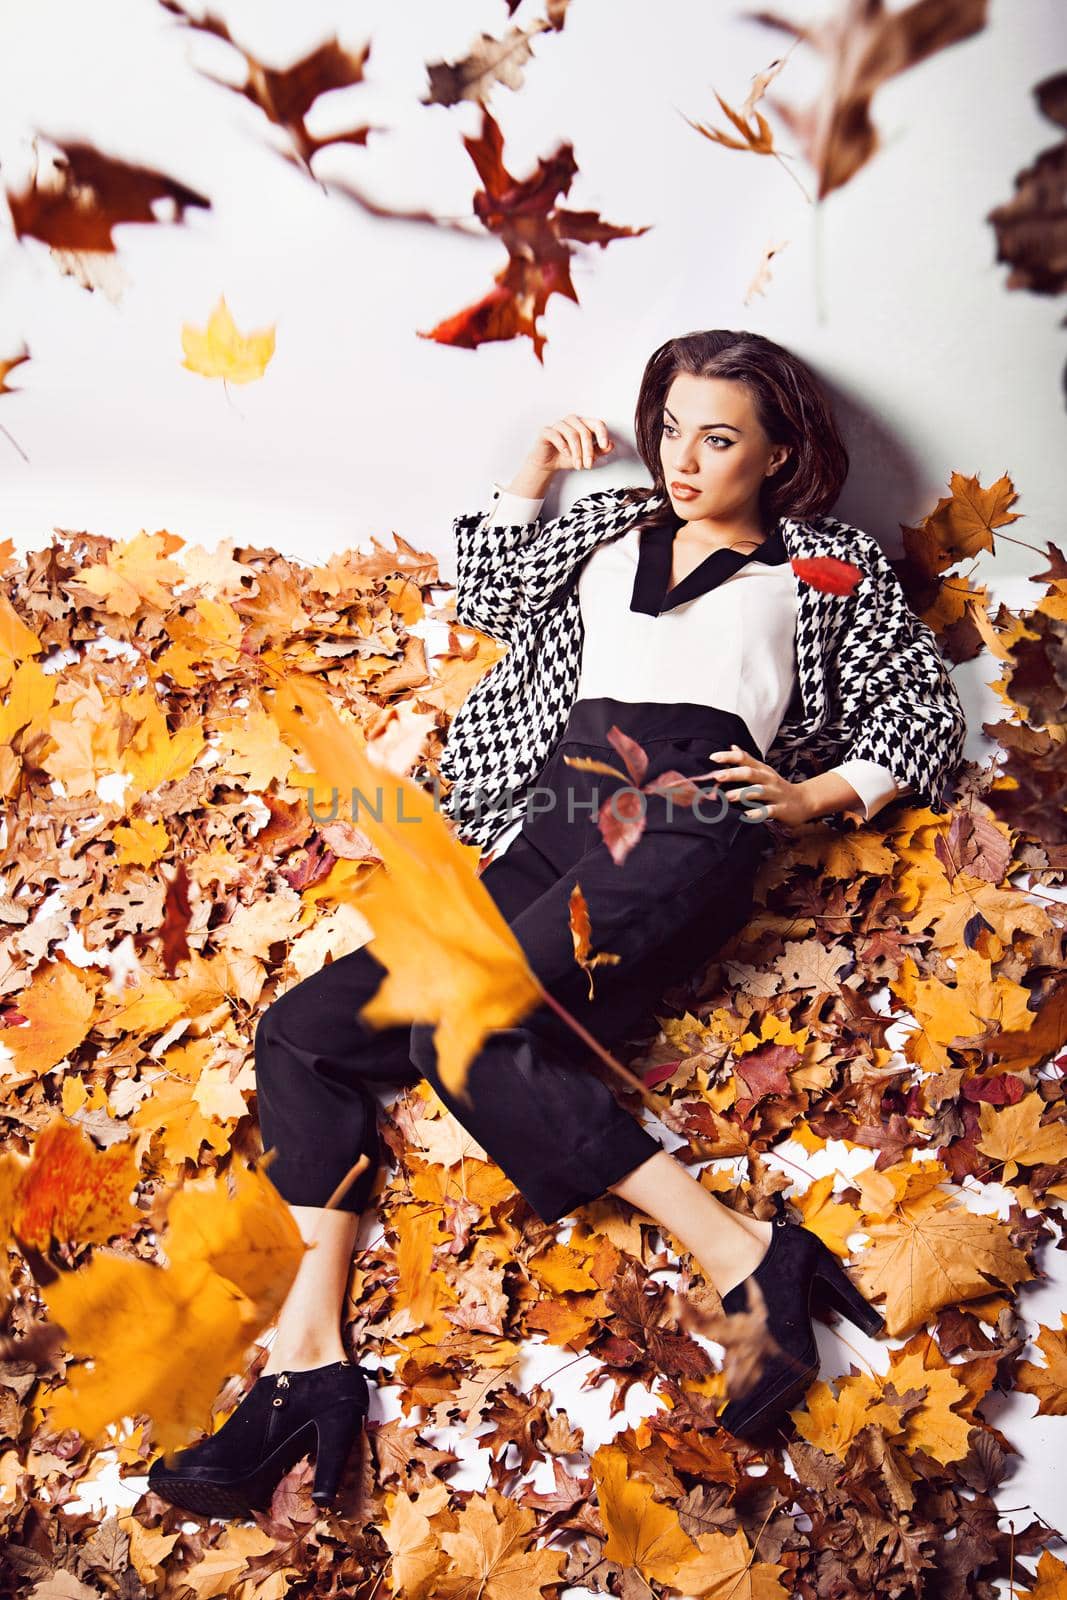 Brunette woman portrait in lying autumn leaves by Julenochek